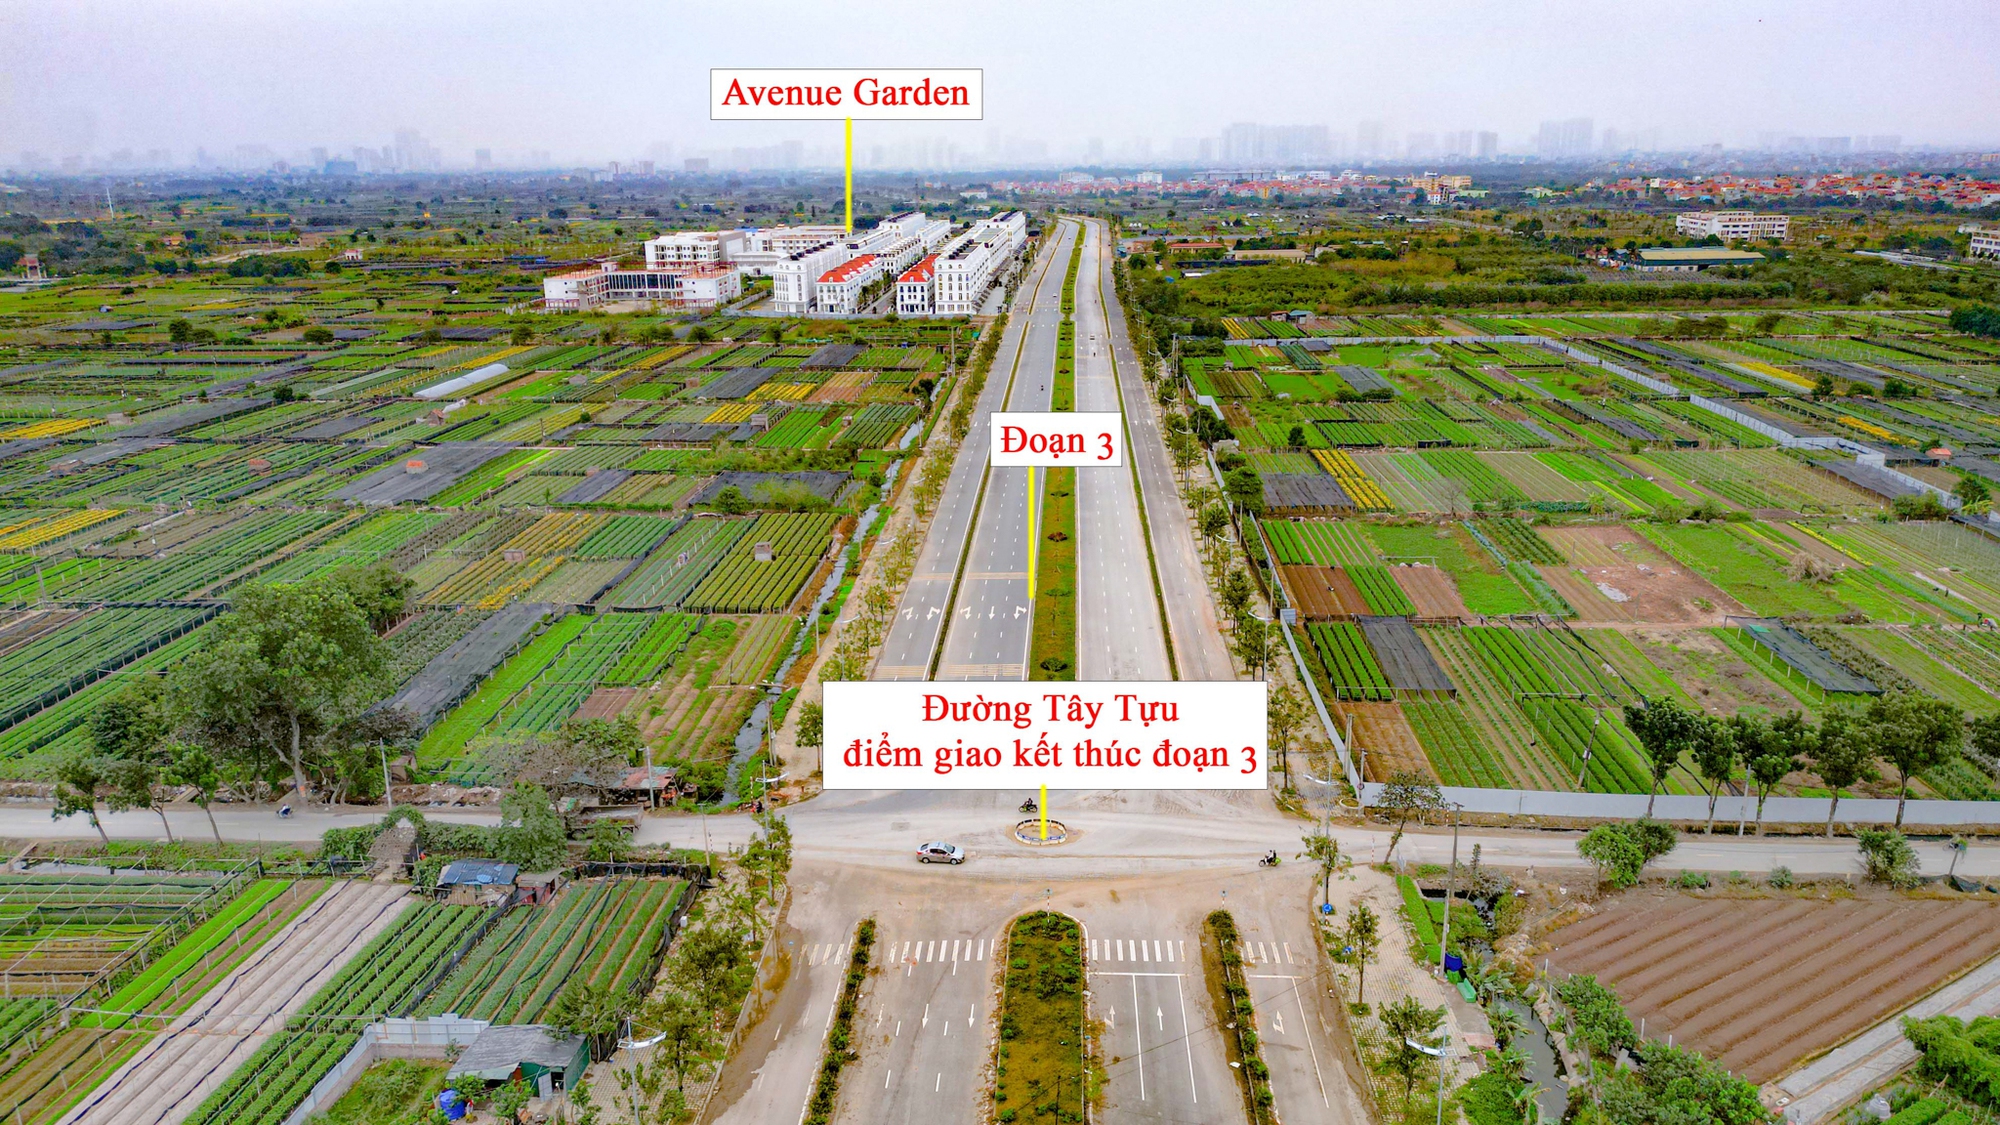 Toàn cảnh tuyến đường 10 làn xe xuyên qua khu đô thị đắt đỏ bậc nhất Hà Nội, tương lai sẽ làm thay đổi toàn bộ bất động sản trục Hồ Tây - Ba Vì- Ảnh 8.